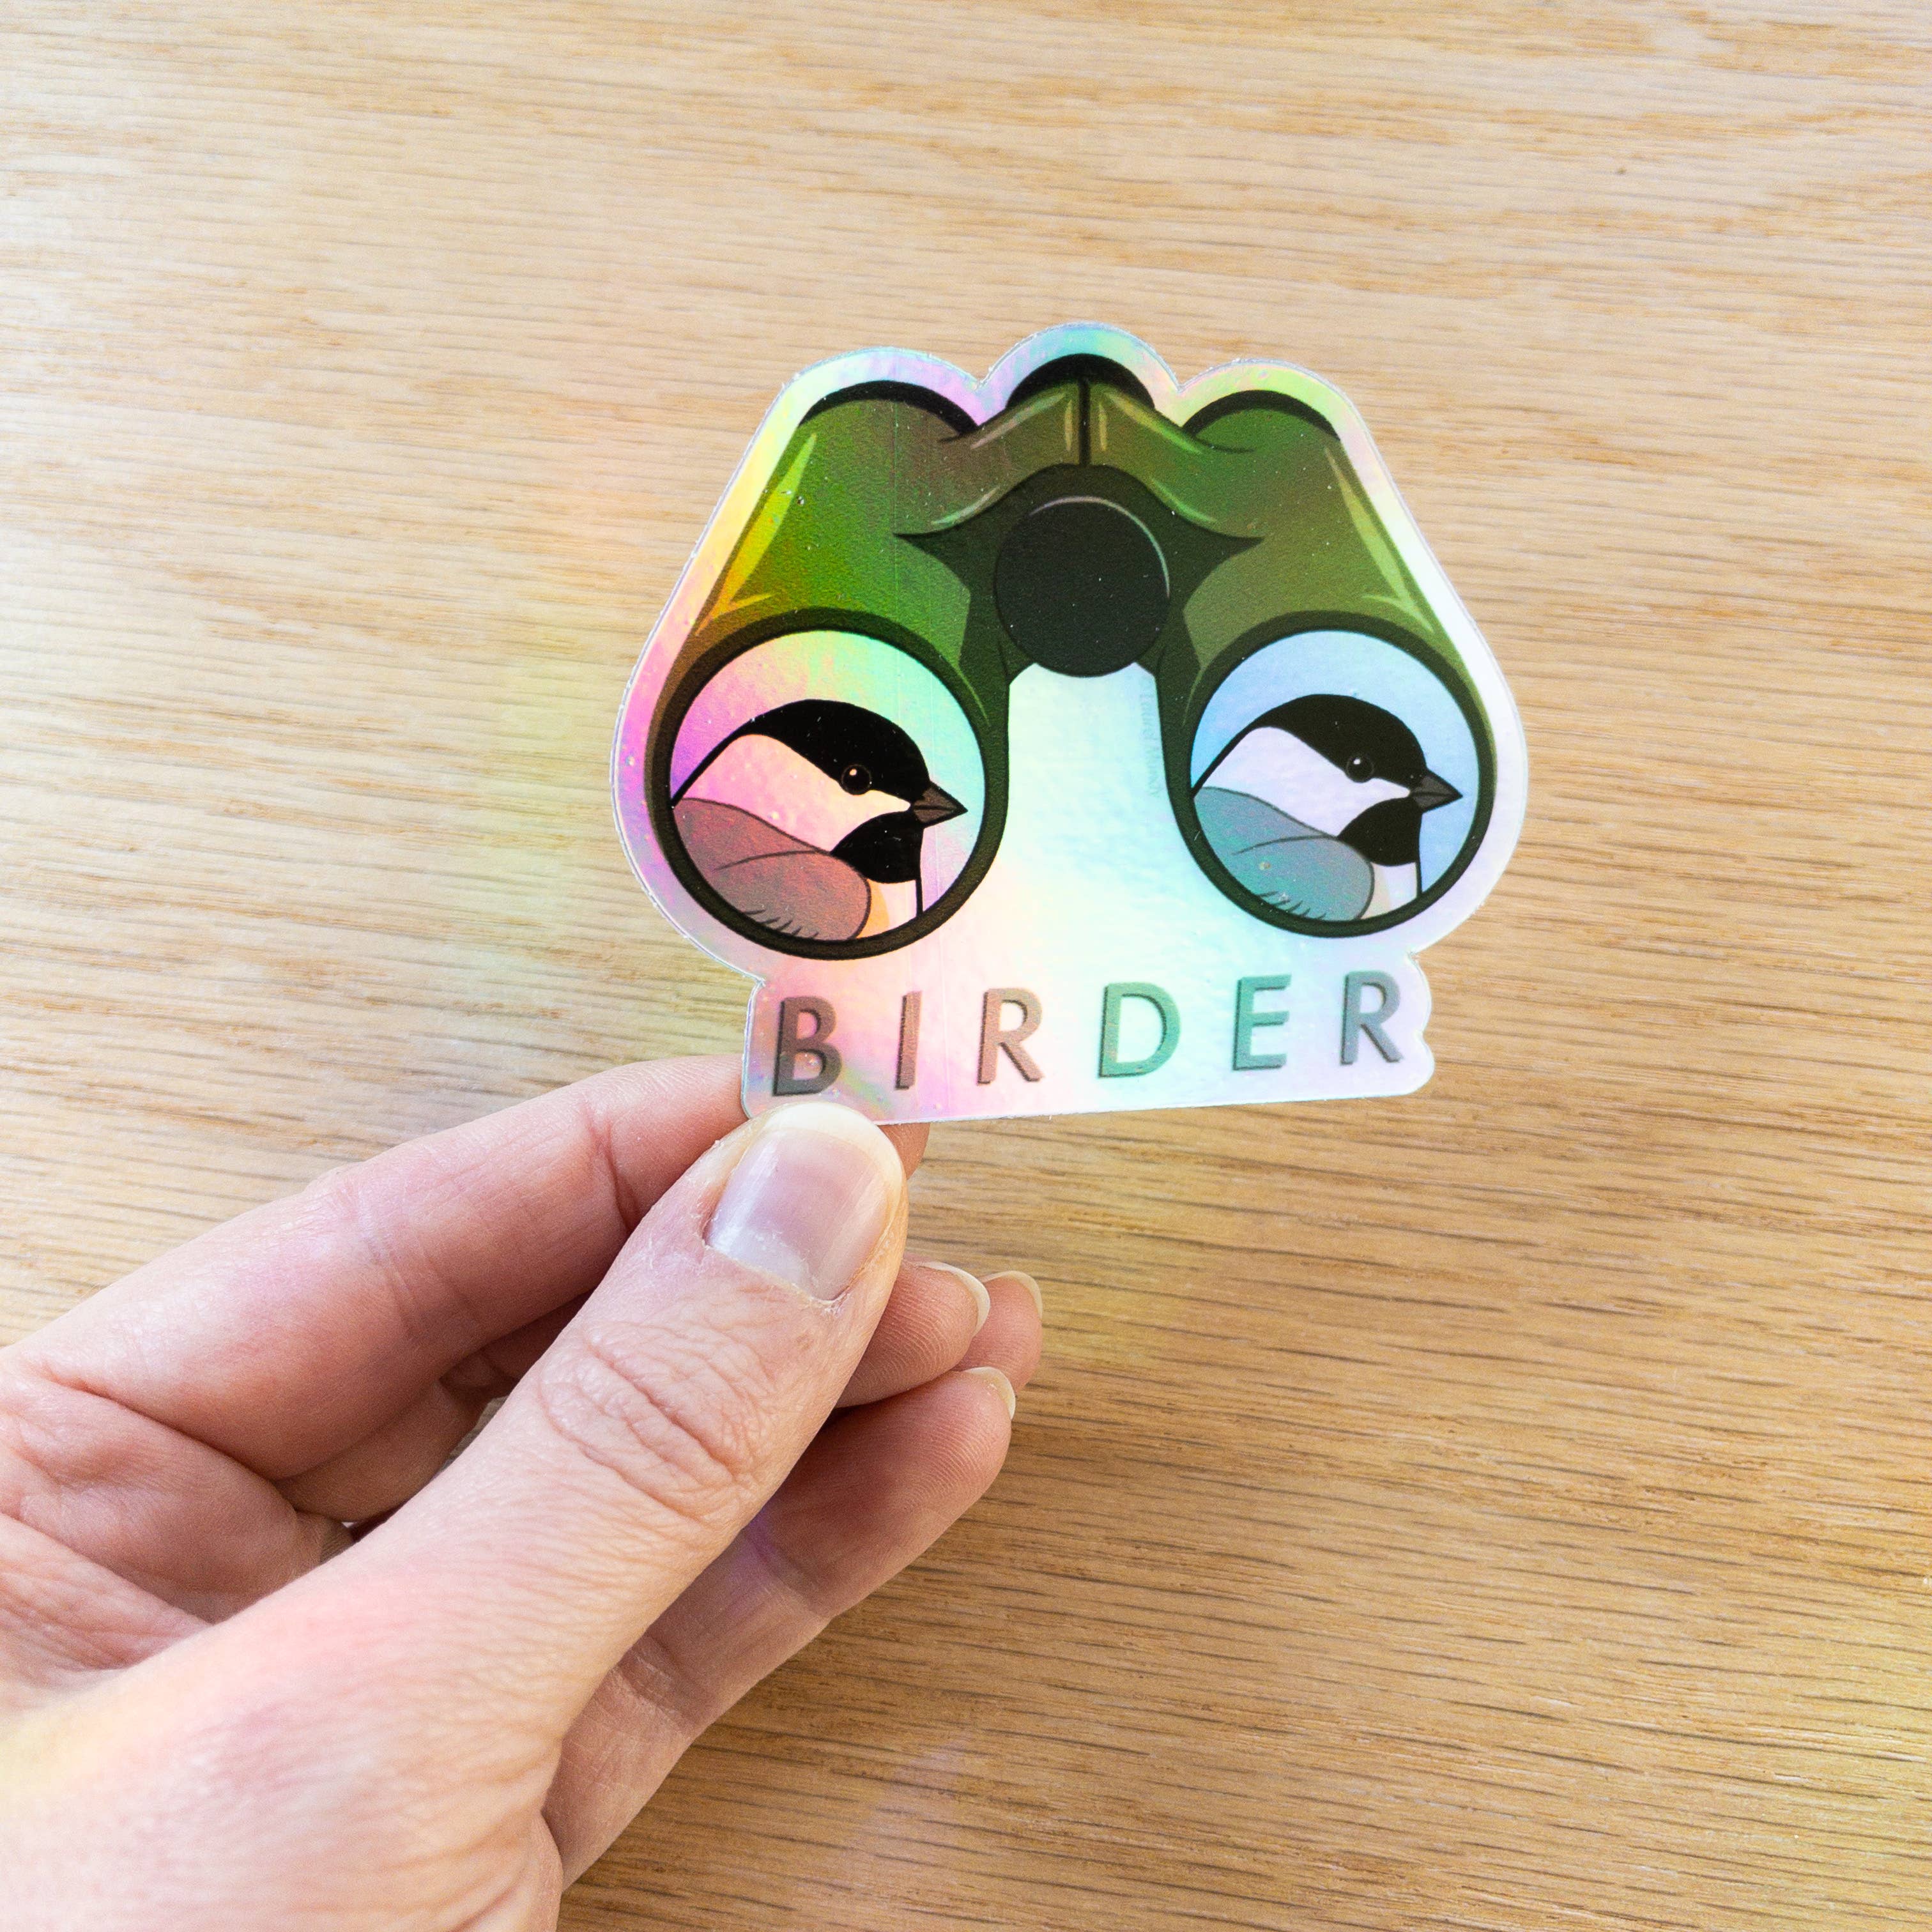 Birder 3"x2.5" Holographic Vinyl Sticker